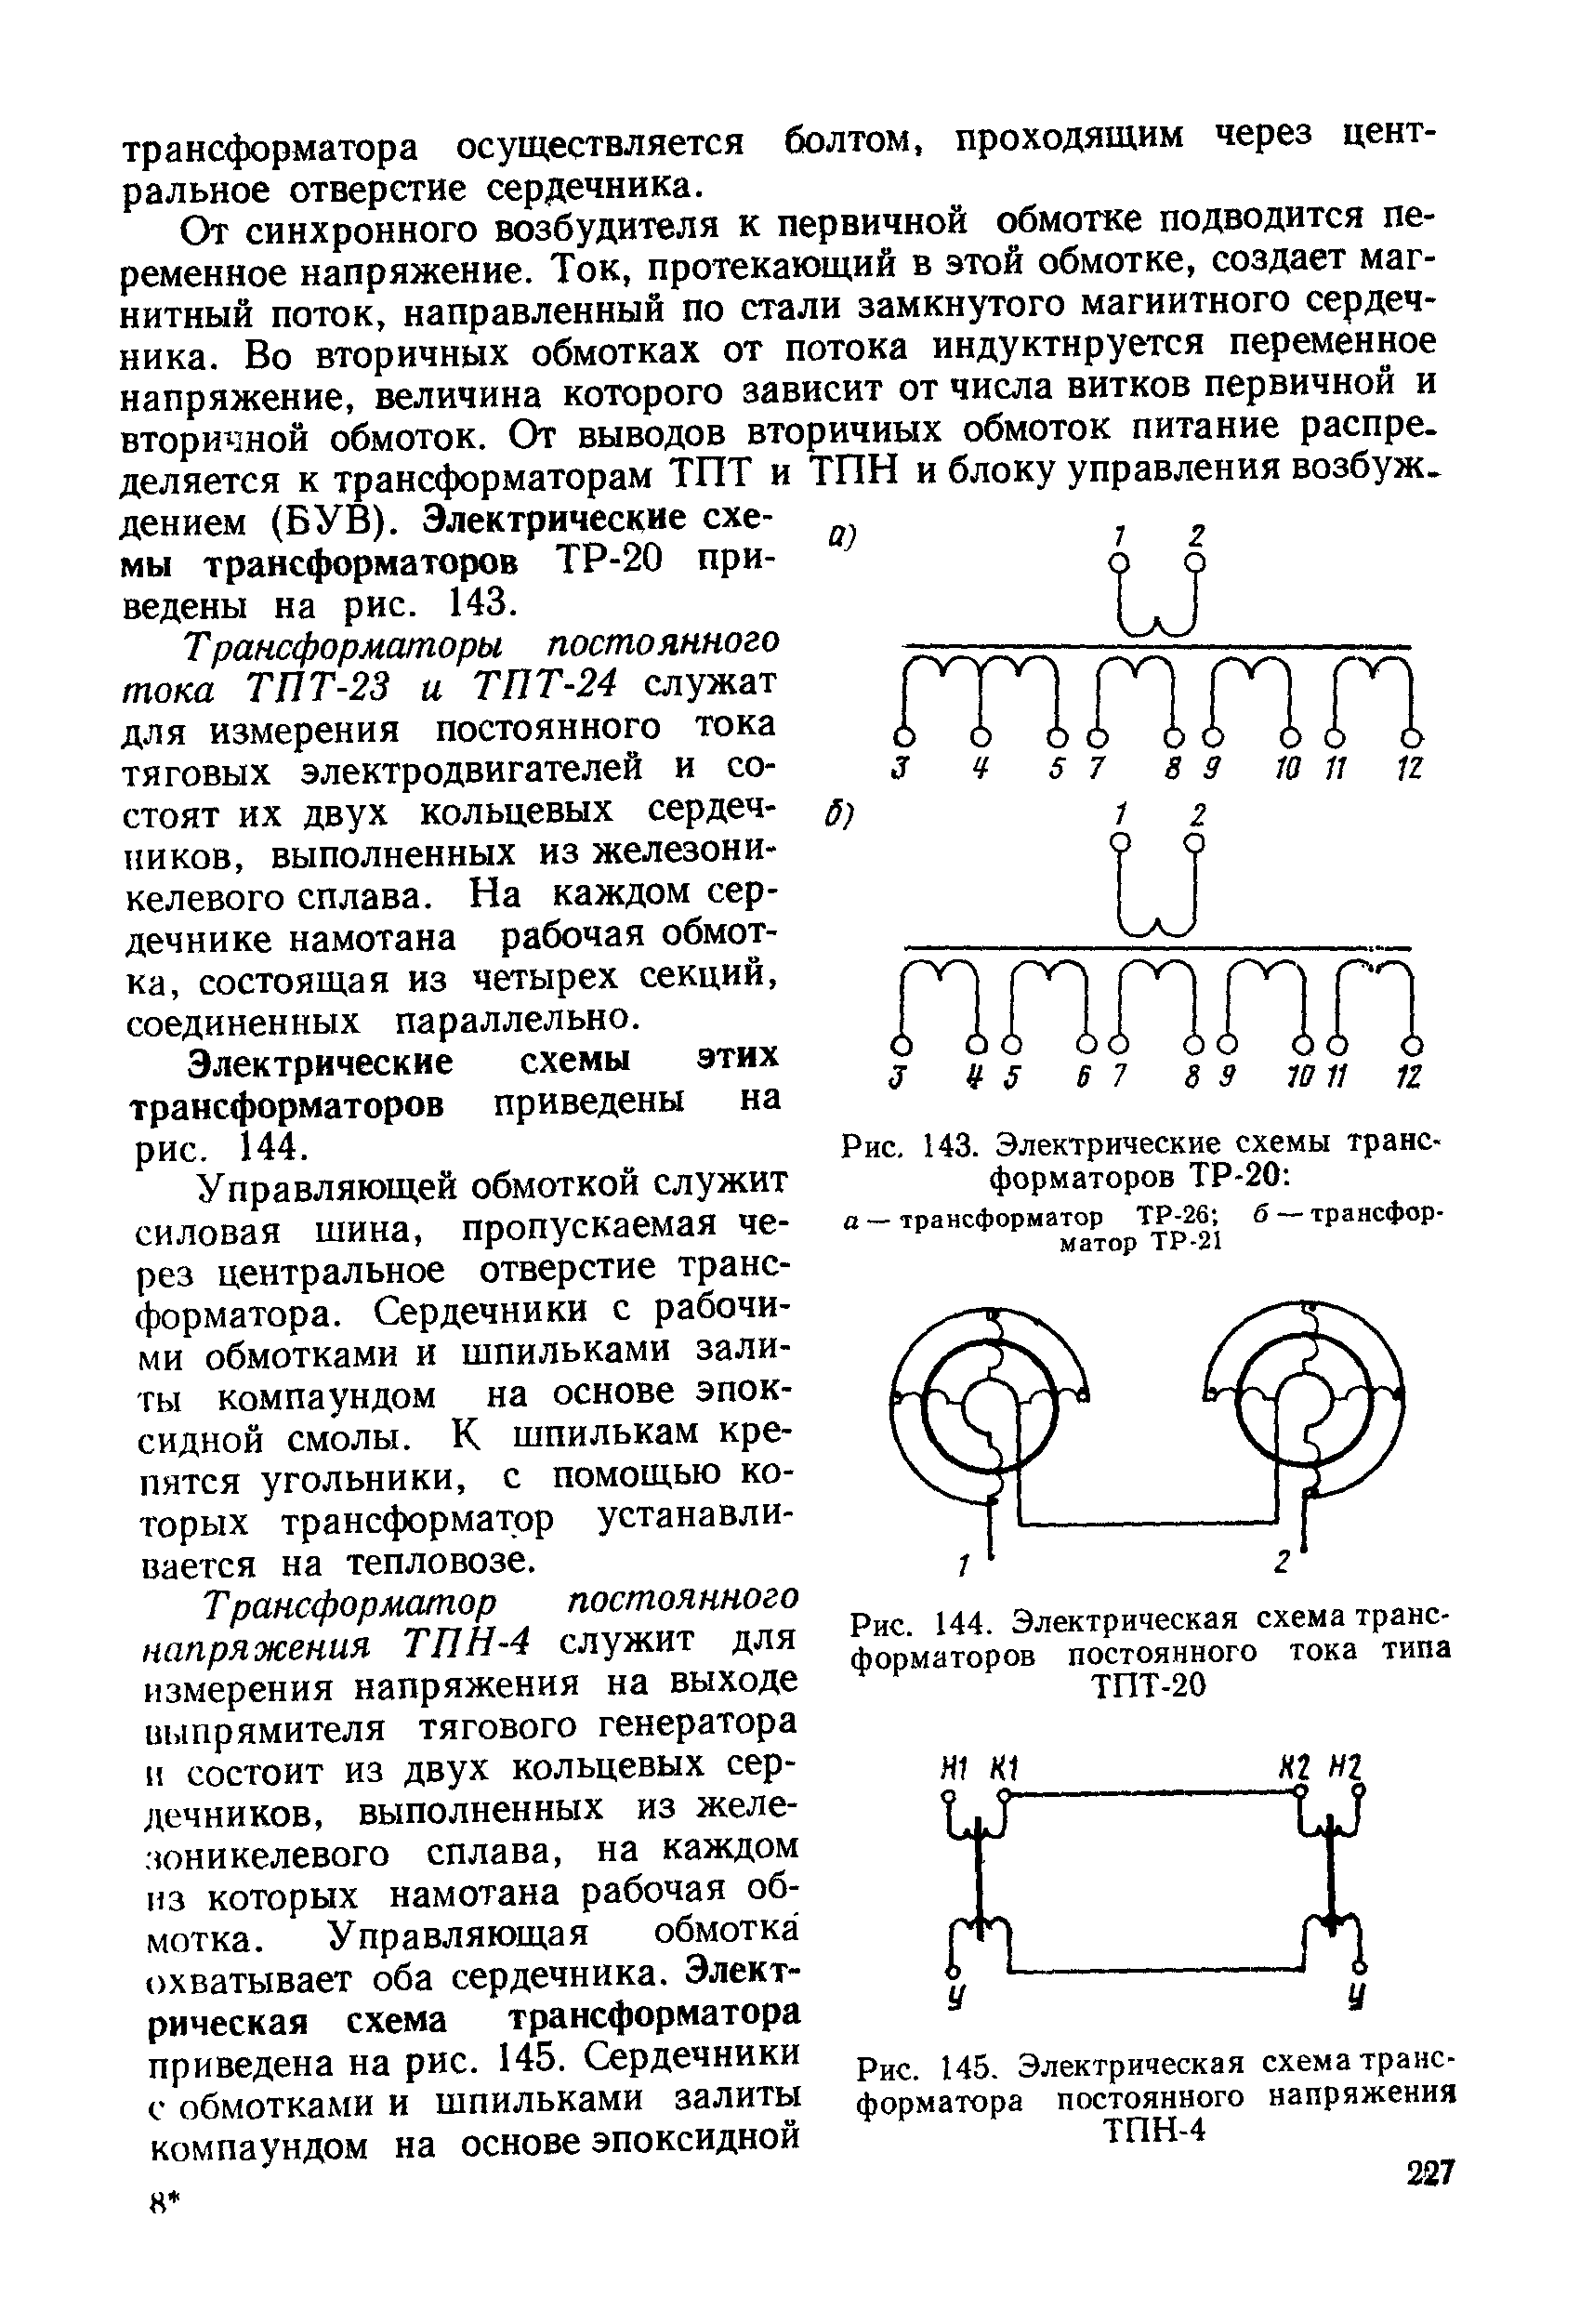 Рис. 145. Электрическая схема трансформатора постоянного напряжения ТПН-4